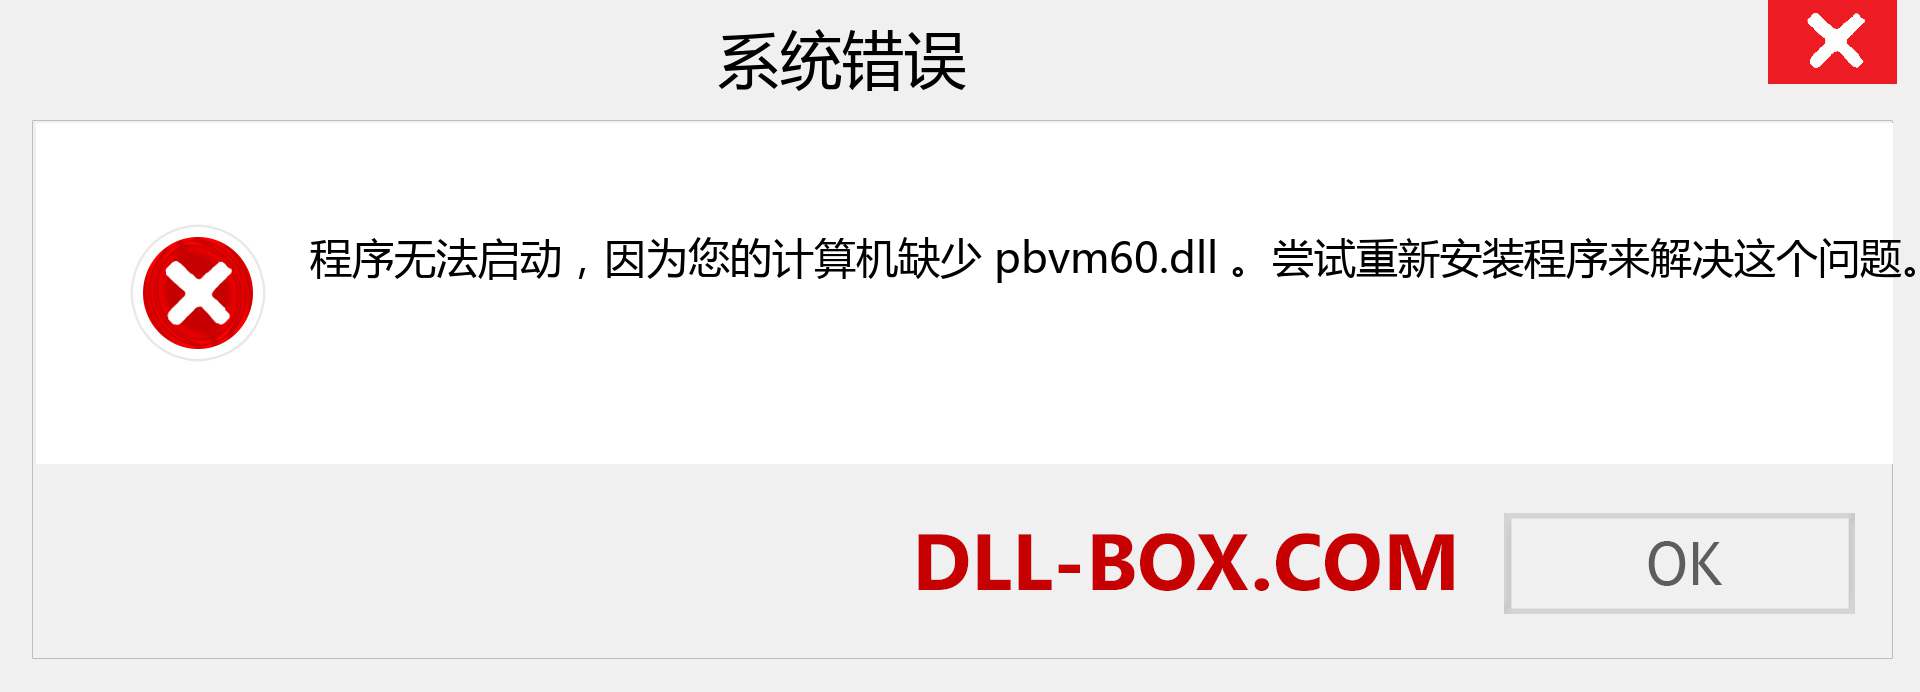 pbvm60.dll 文件丢失？。 适用于 Windows 7、8、10 的下载 - 修复 Windows、照片、图像上的 pbvm60 dll 丢失错误